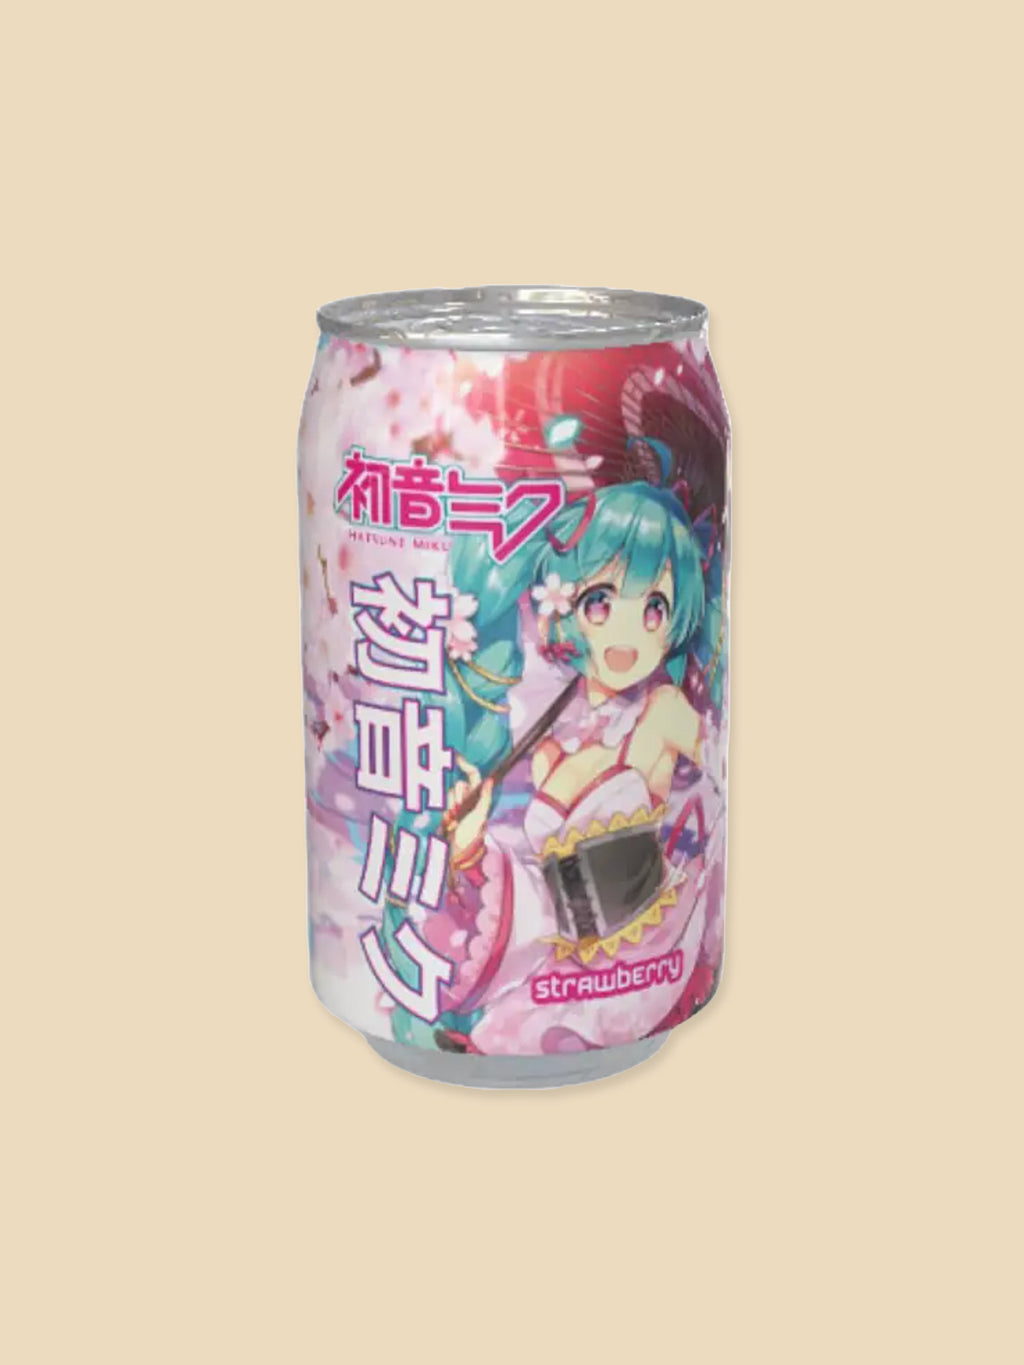 Hatsune Miku Strawberry Flavour Drink - 330ml